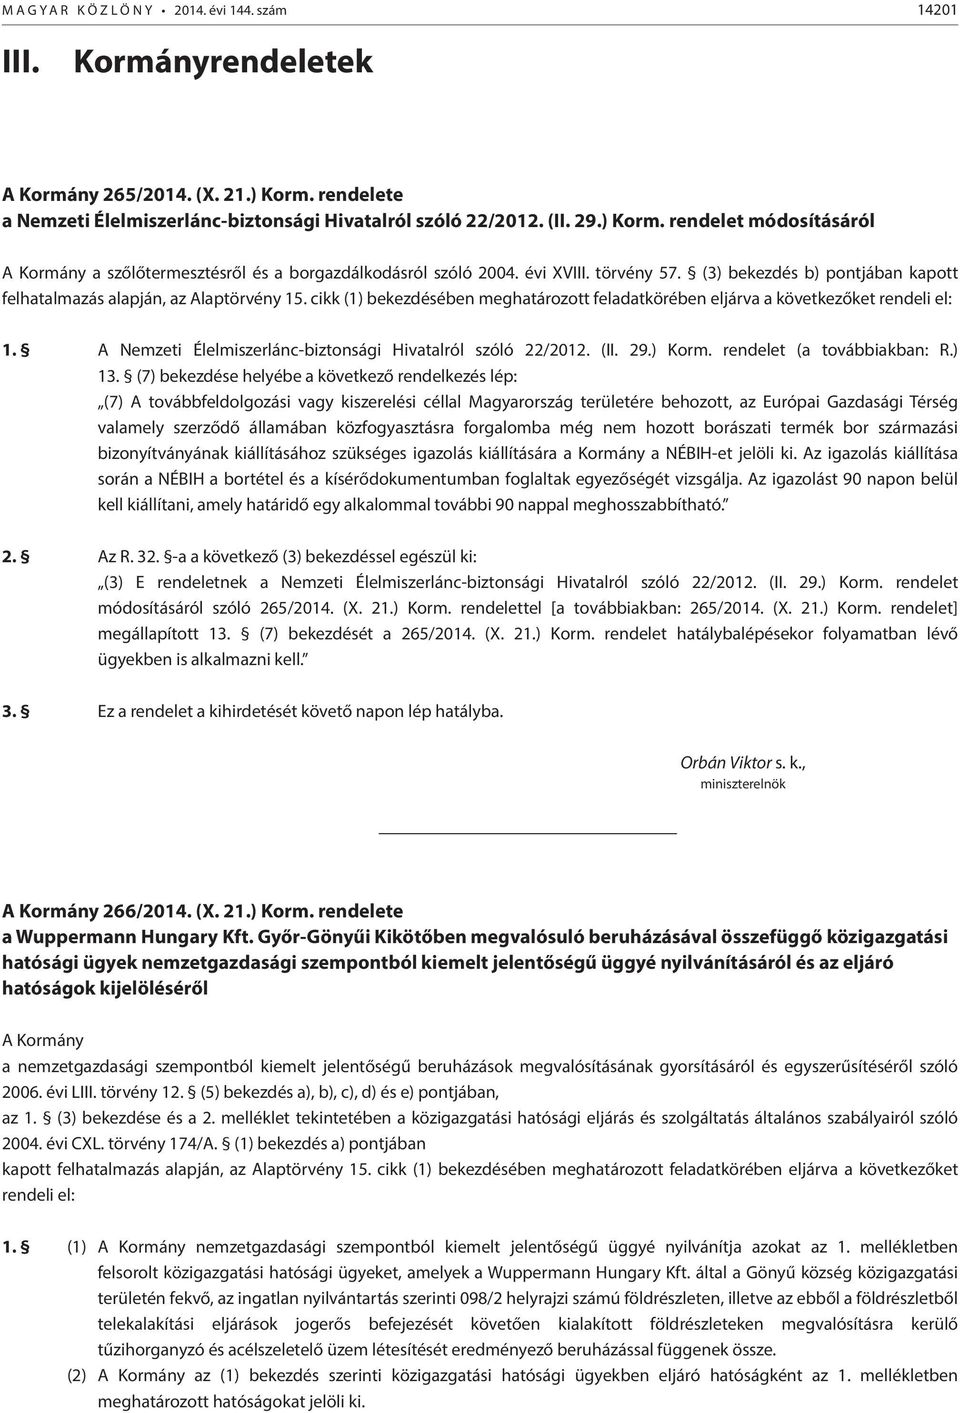 A Nemzeti Élelmiszerlánc-biztonsági Hivatalról szóló 22/2012. (II. 29.) Korm. rendelet (a továbbiakban: R.) 13.